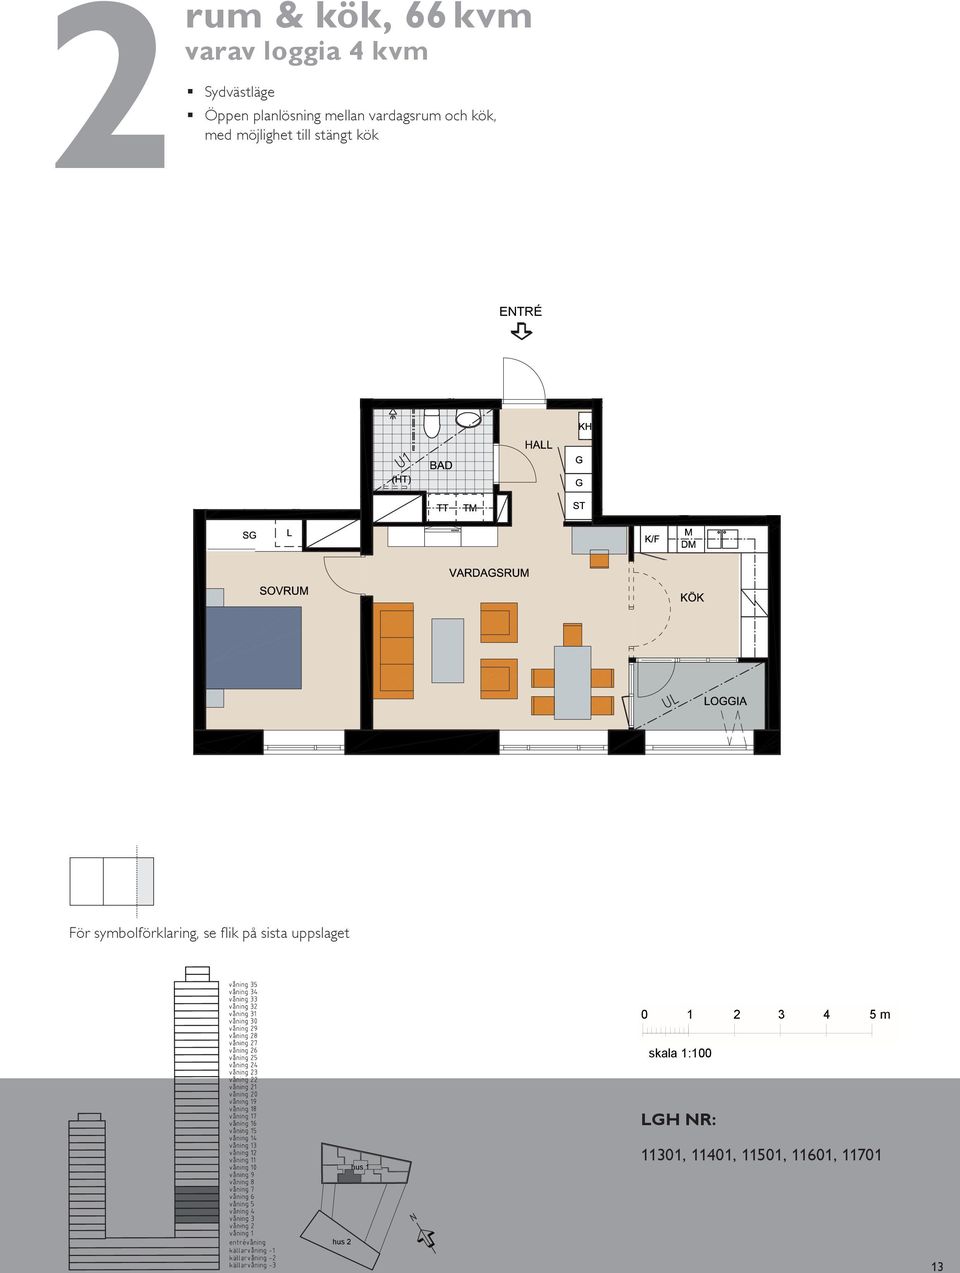 vardagsrum och kök, rum & kök, 66 m² varav loggia m² Sydvästläge Öppen planlösning mellan vardagsrum och kök, med möjlighet till stängt kök BAKO BH,5 BH,7 m